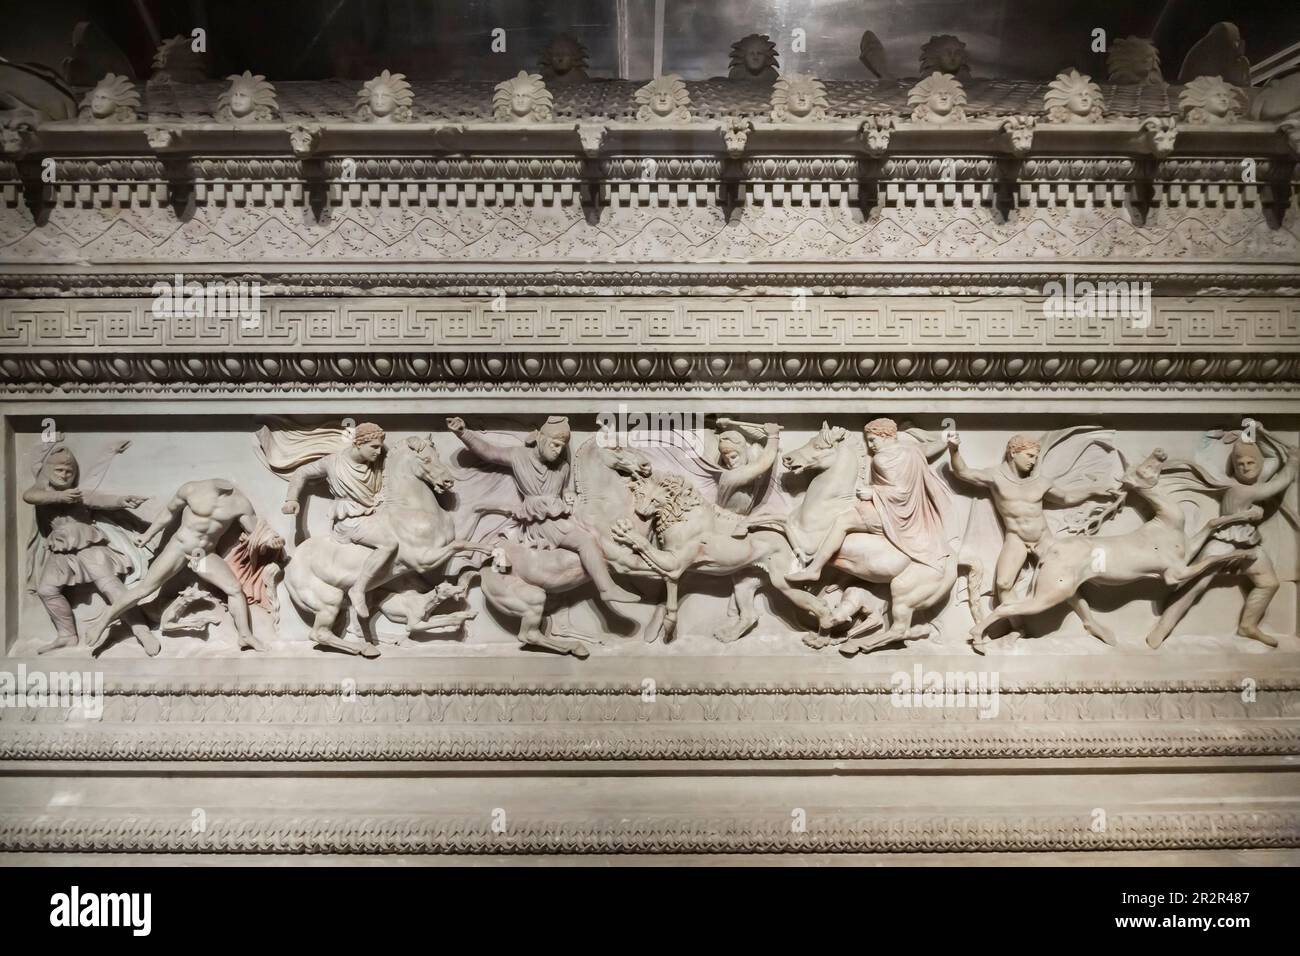 Teil von Alexander Sarcophagus, Marmorschnitzerei, Königliche Nekropole von Sidon, 4 Cent.B.C., Istanbul Archäologiemuseen, Istanbul, Türkei Stockfoto